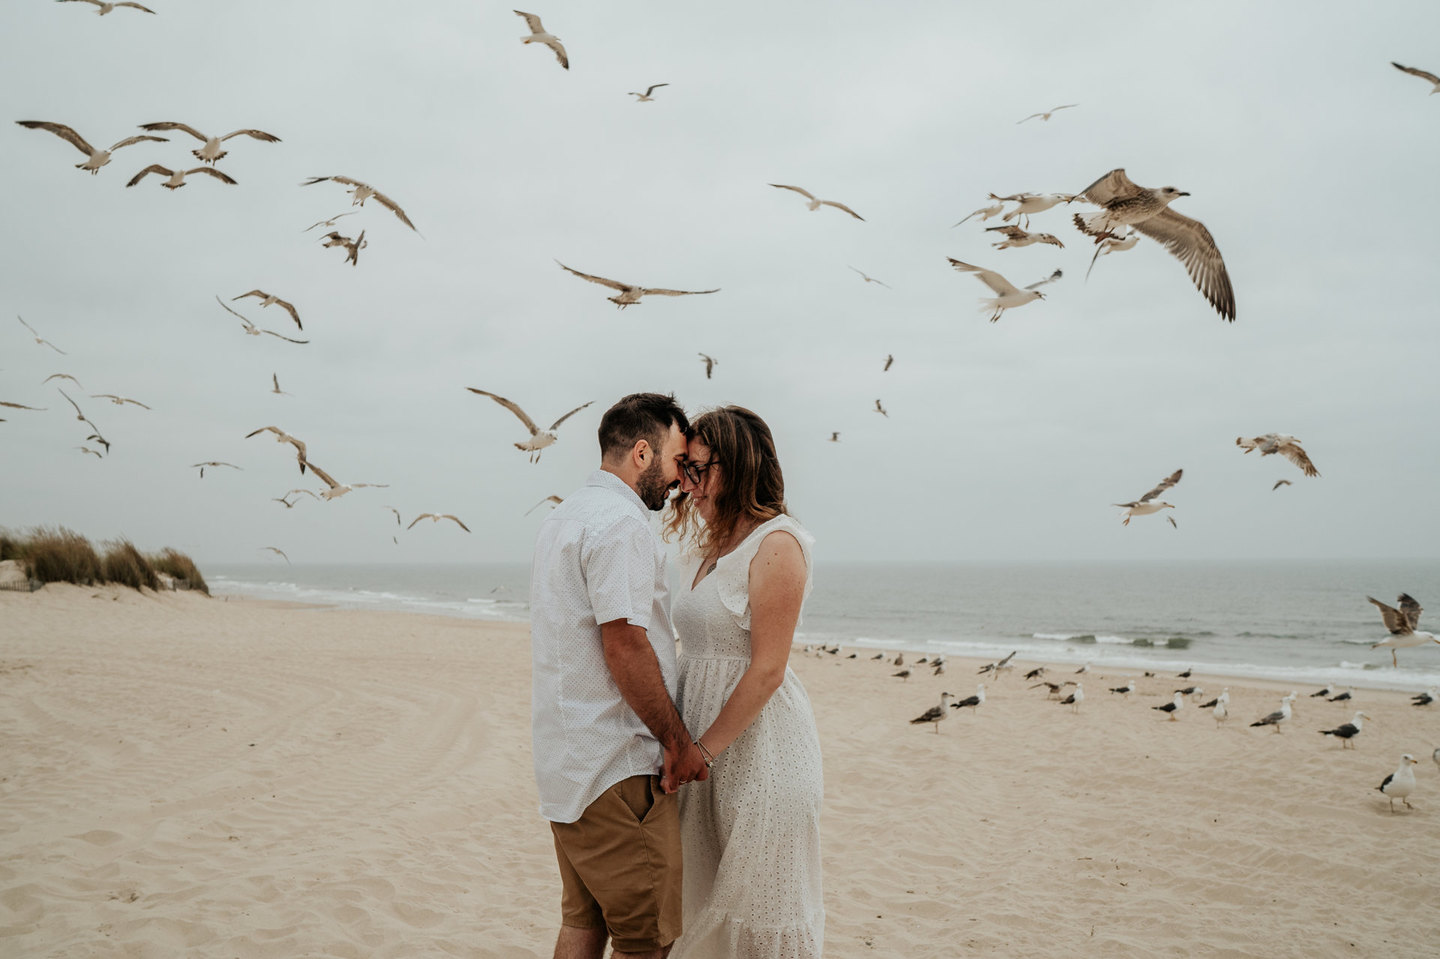 Ensaio pré-casamento na praia de Mira - Sara e Luís